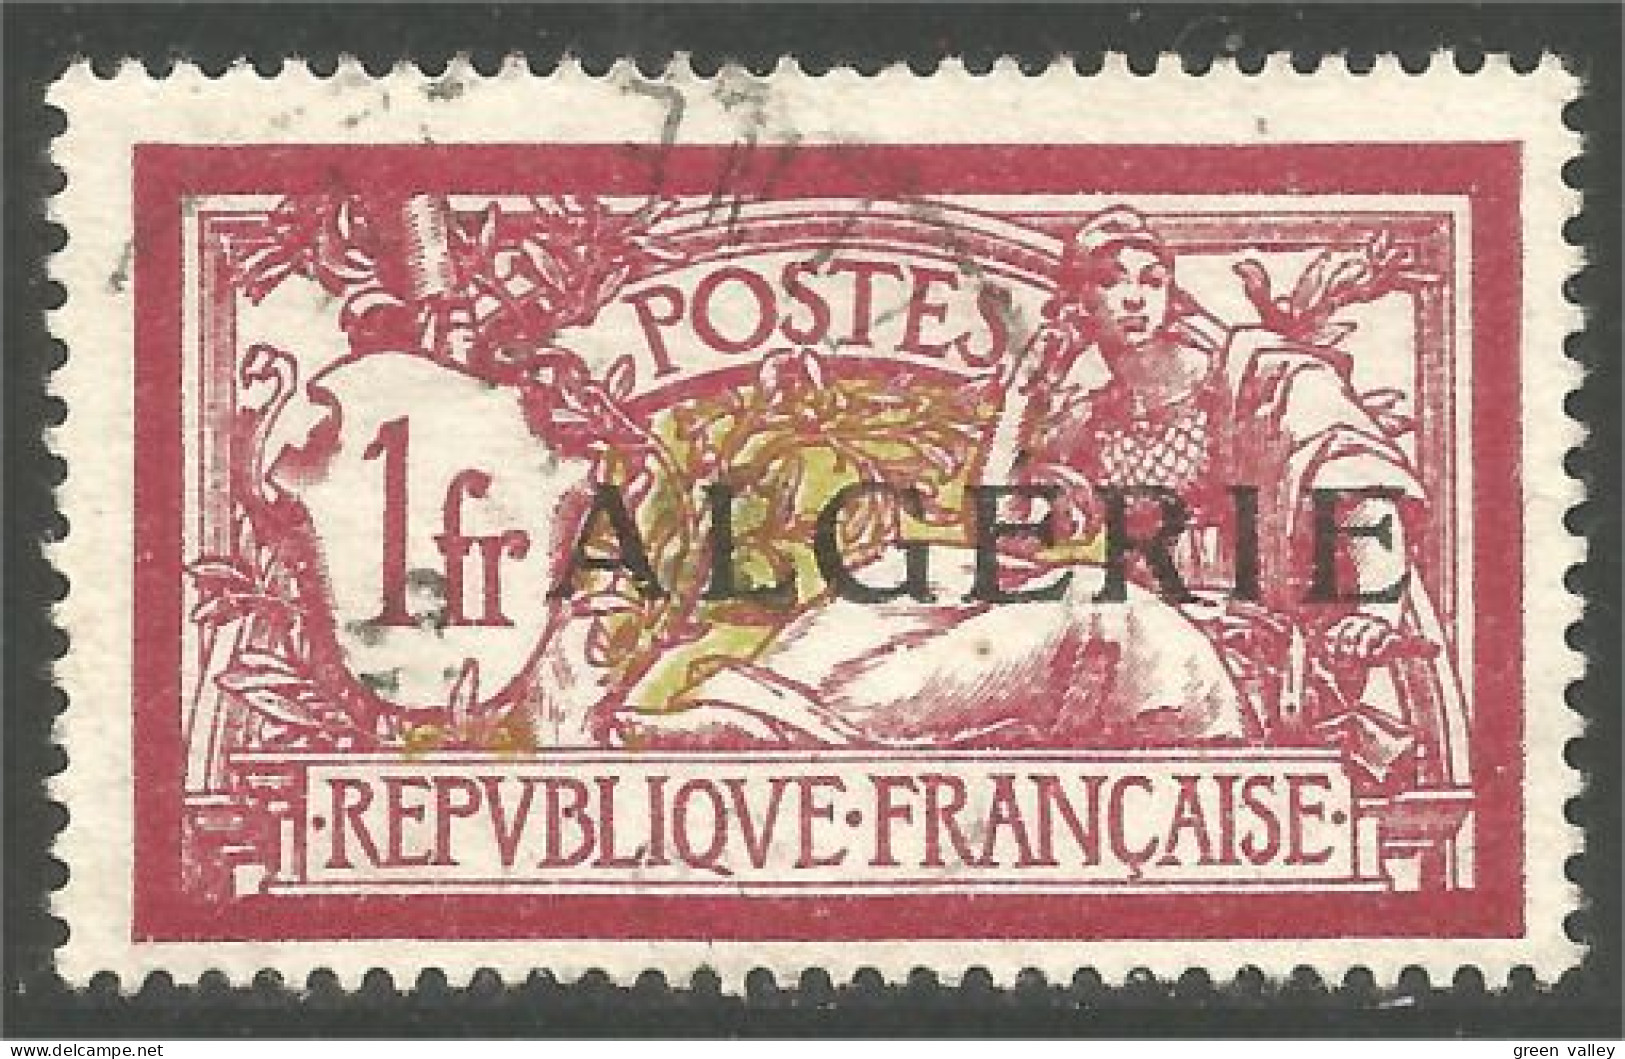 124 Algerie 1924 1fr Lie De Vin Olive (ALG-197) - Oblitérés